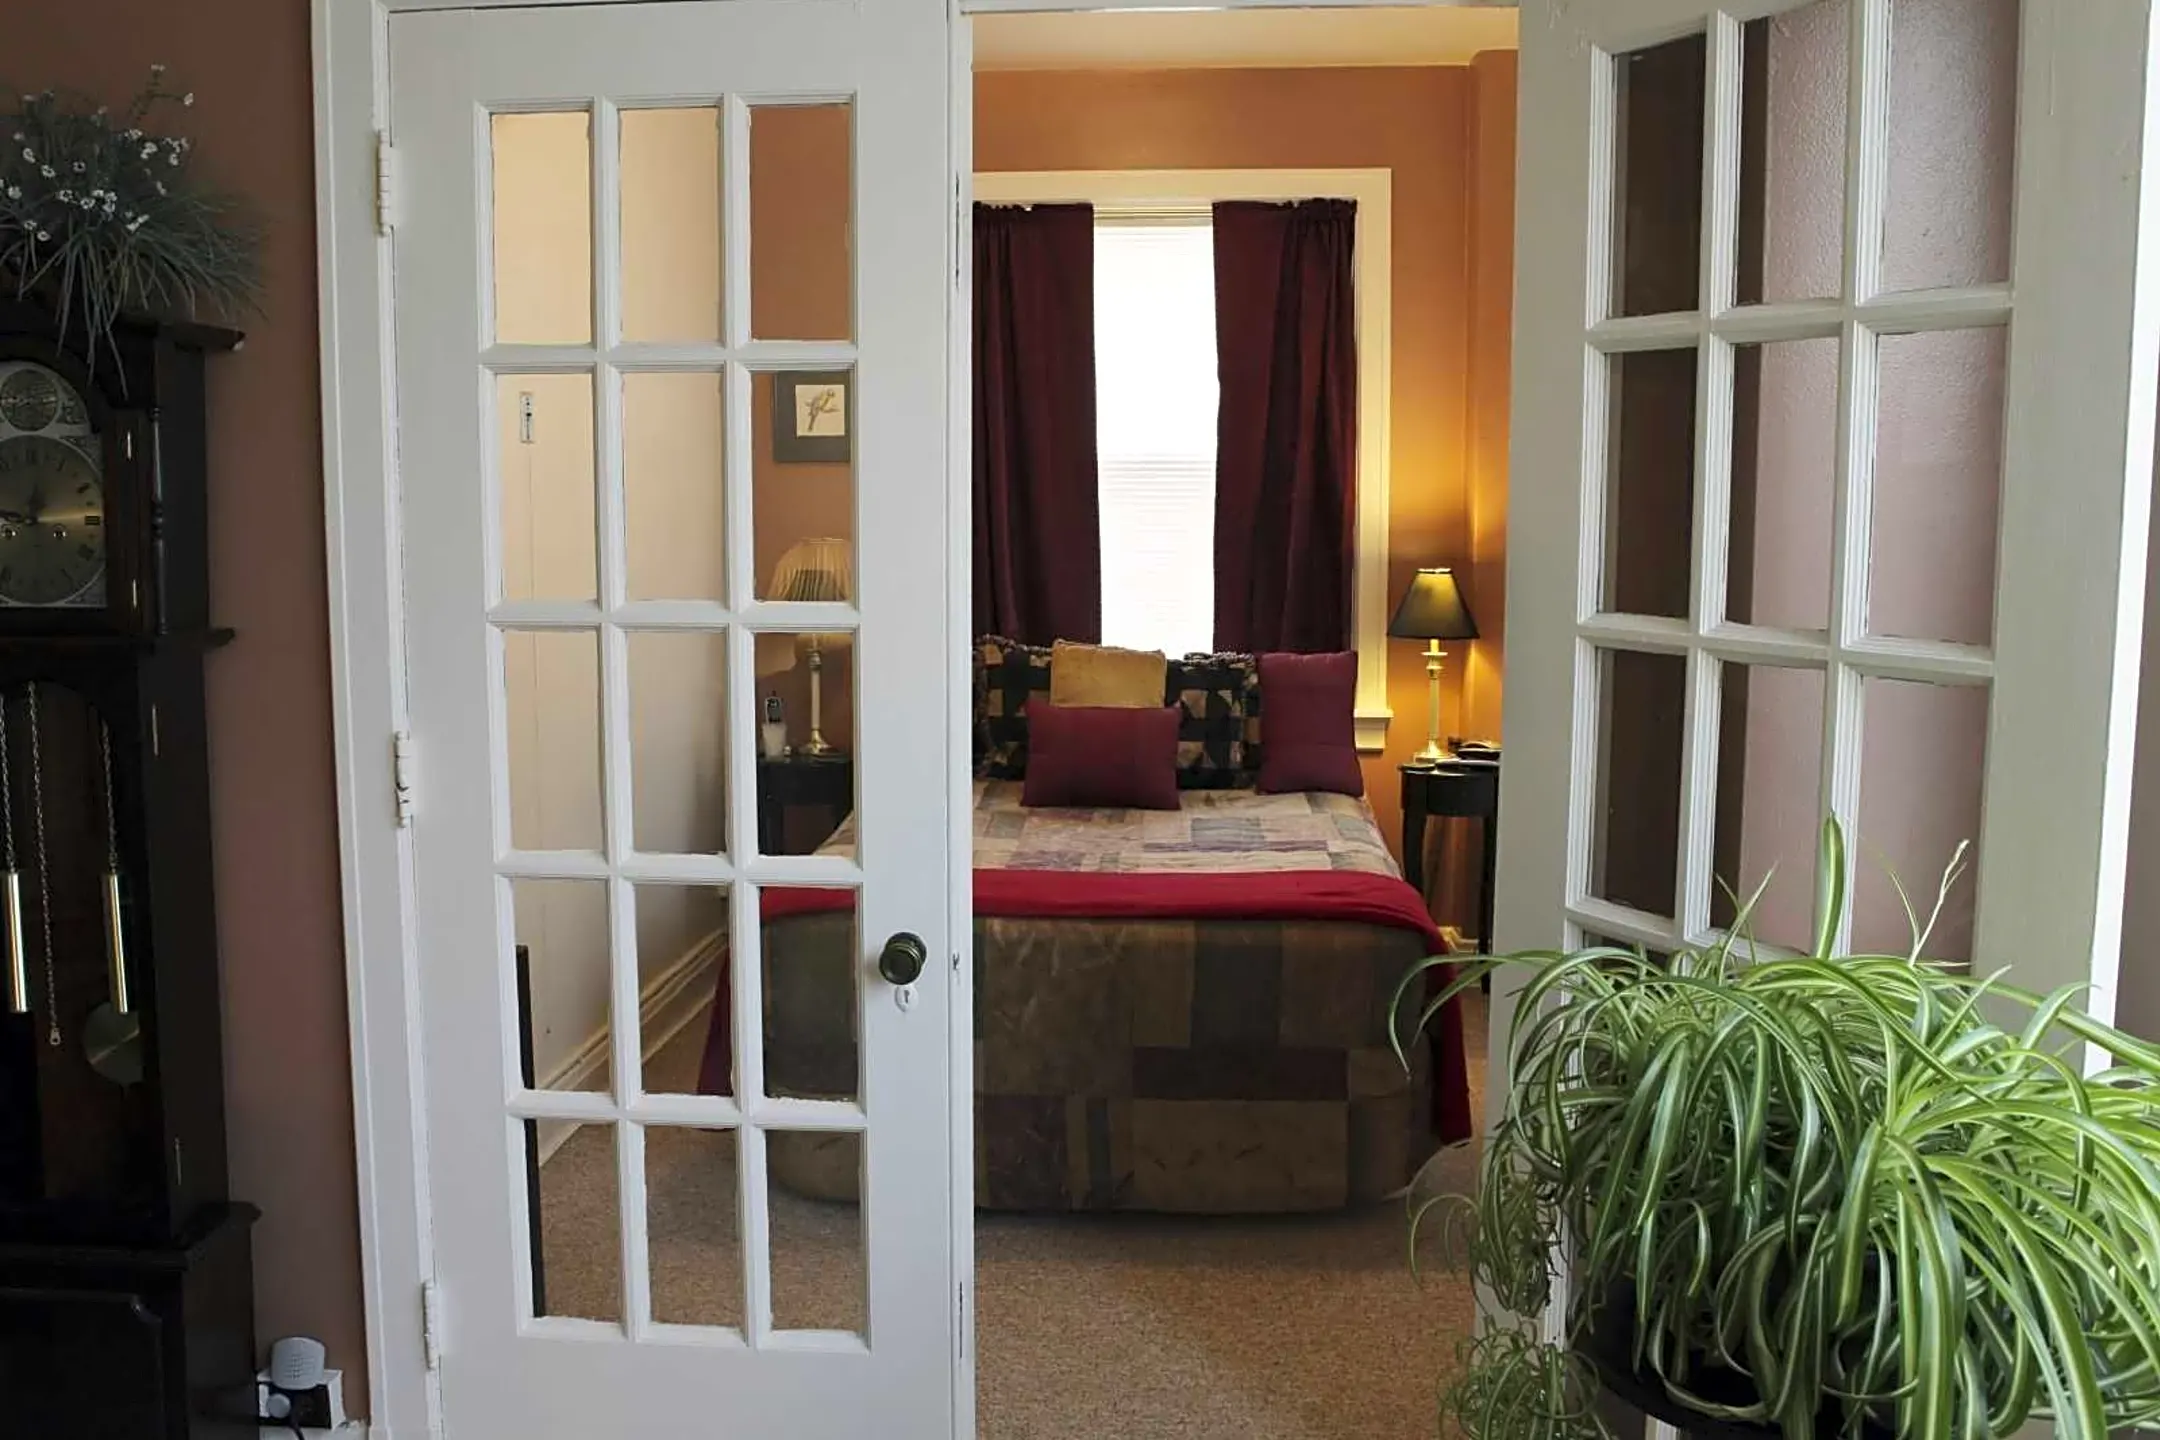 Bedroom - The Puritan - Louisville, KY